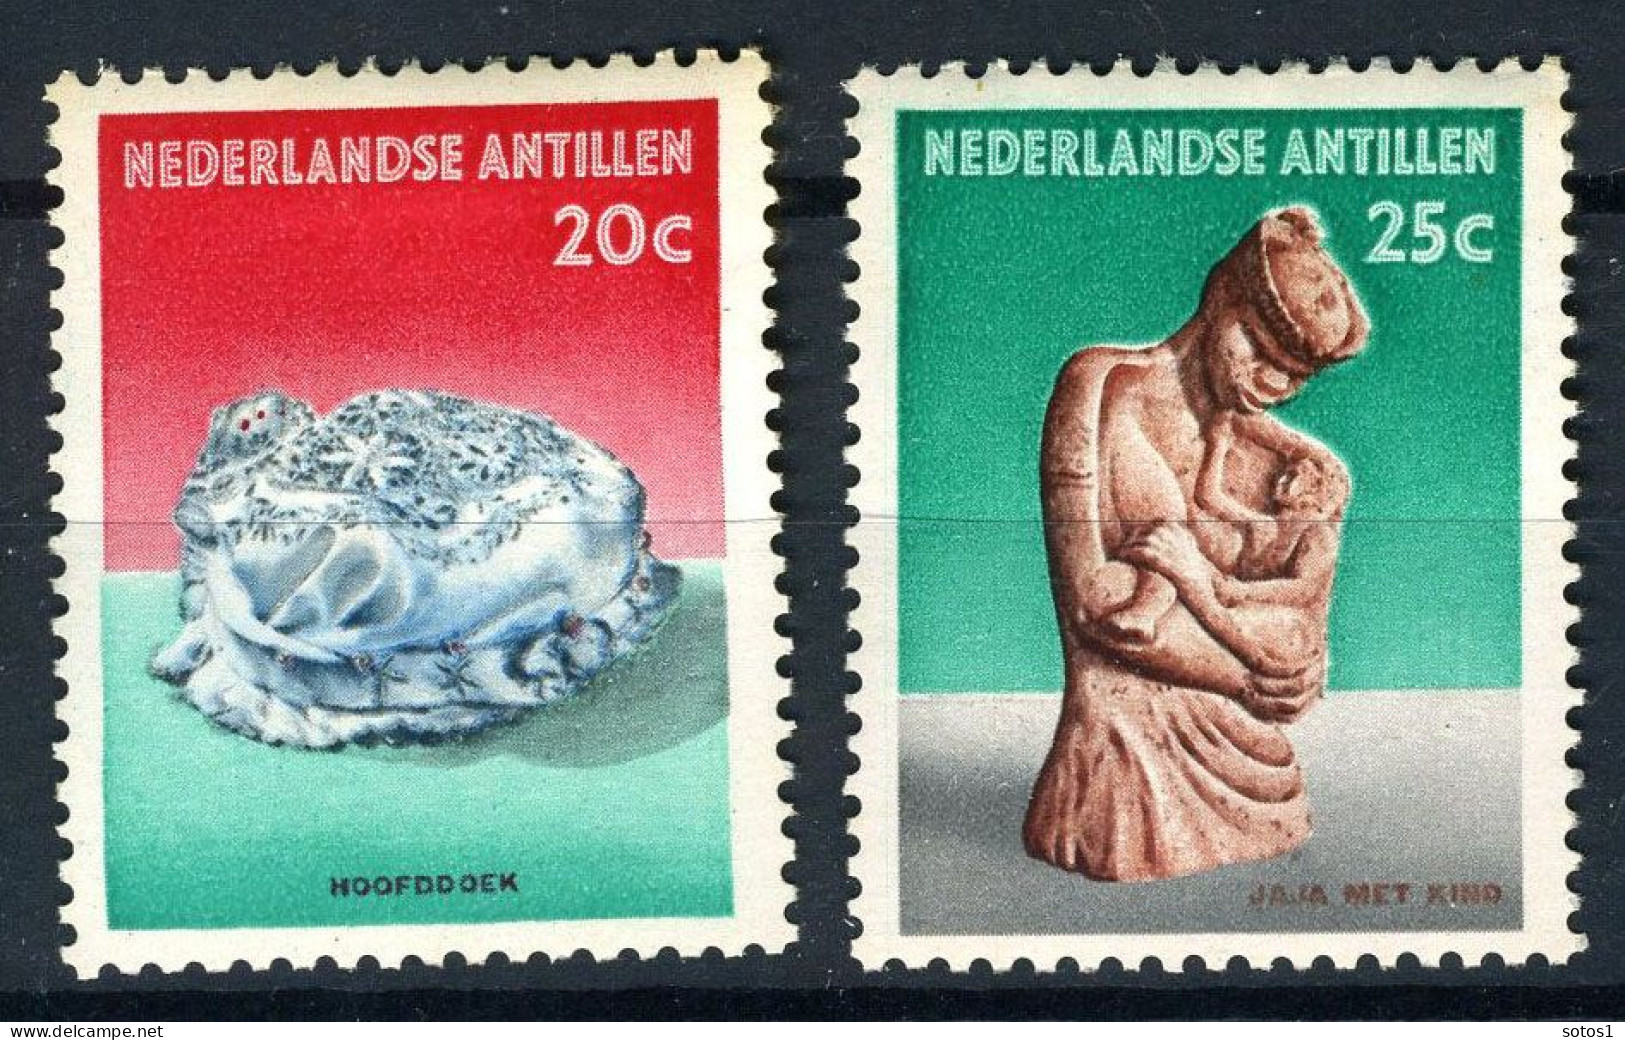 NL. ANTILLEN 327/328 MH 1962 - Cultuurzegels. - Curacao, Netherlands Antilles, Aruba